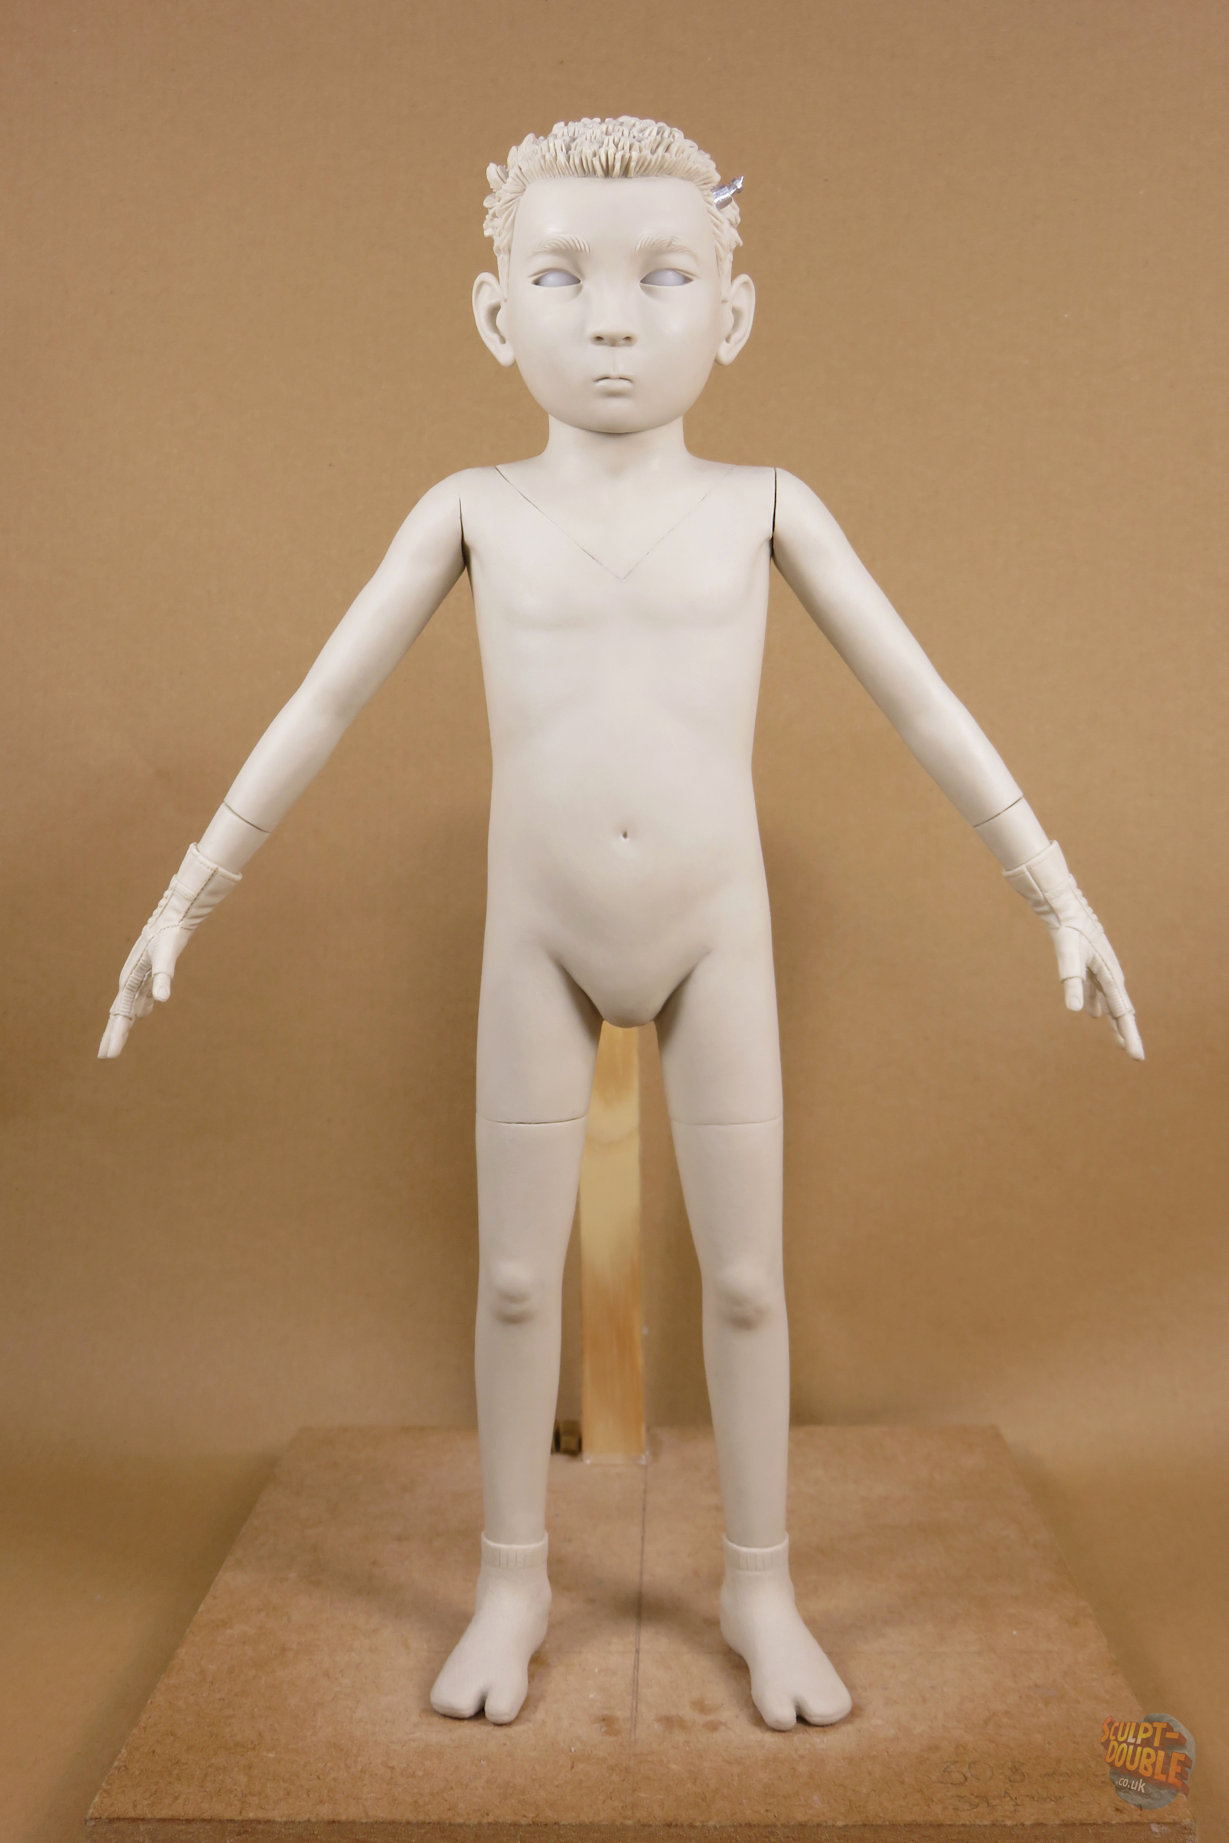 Atari - full body puppet sculpt